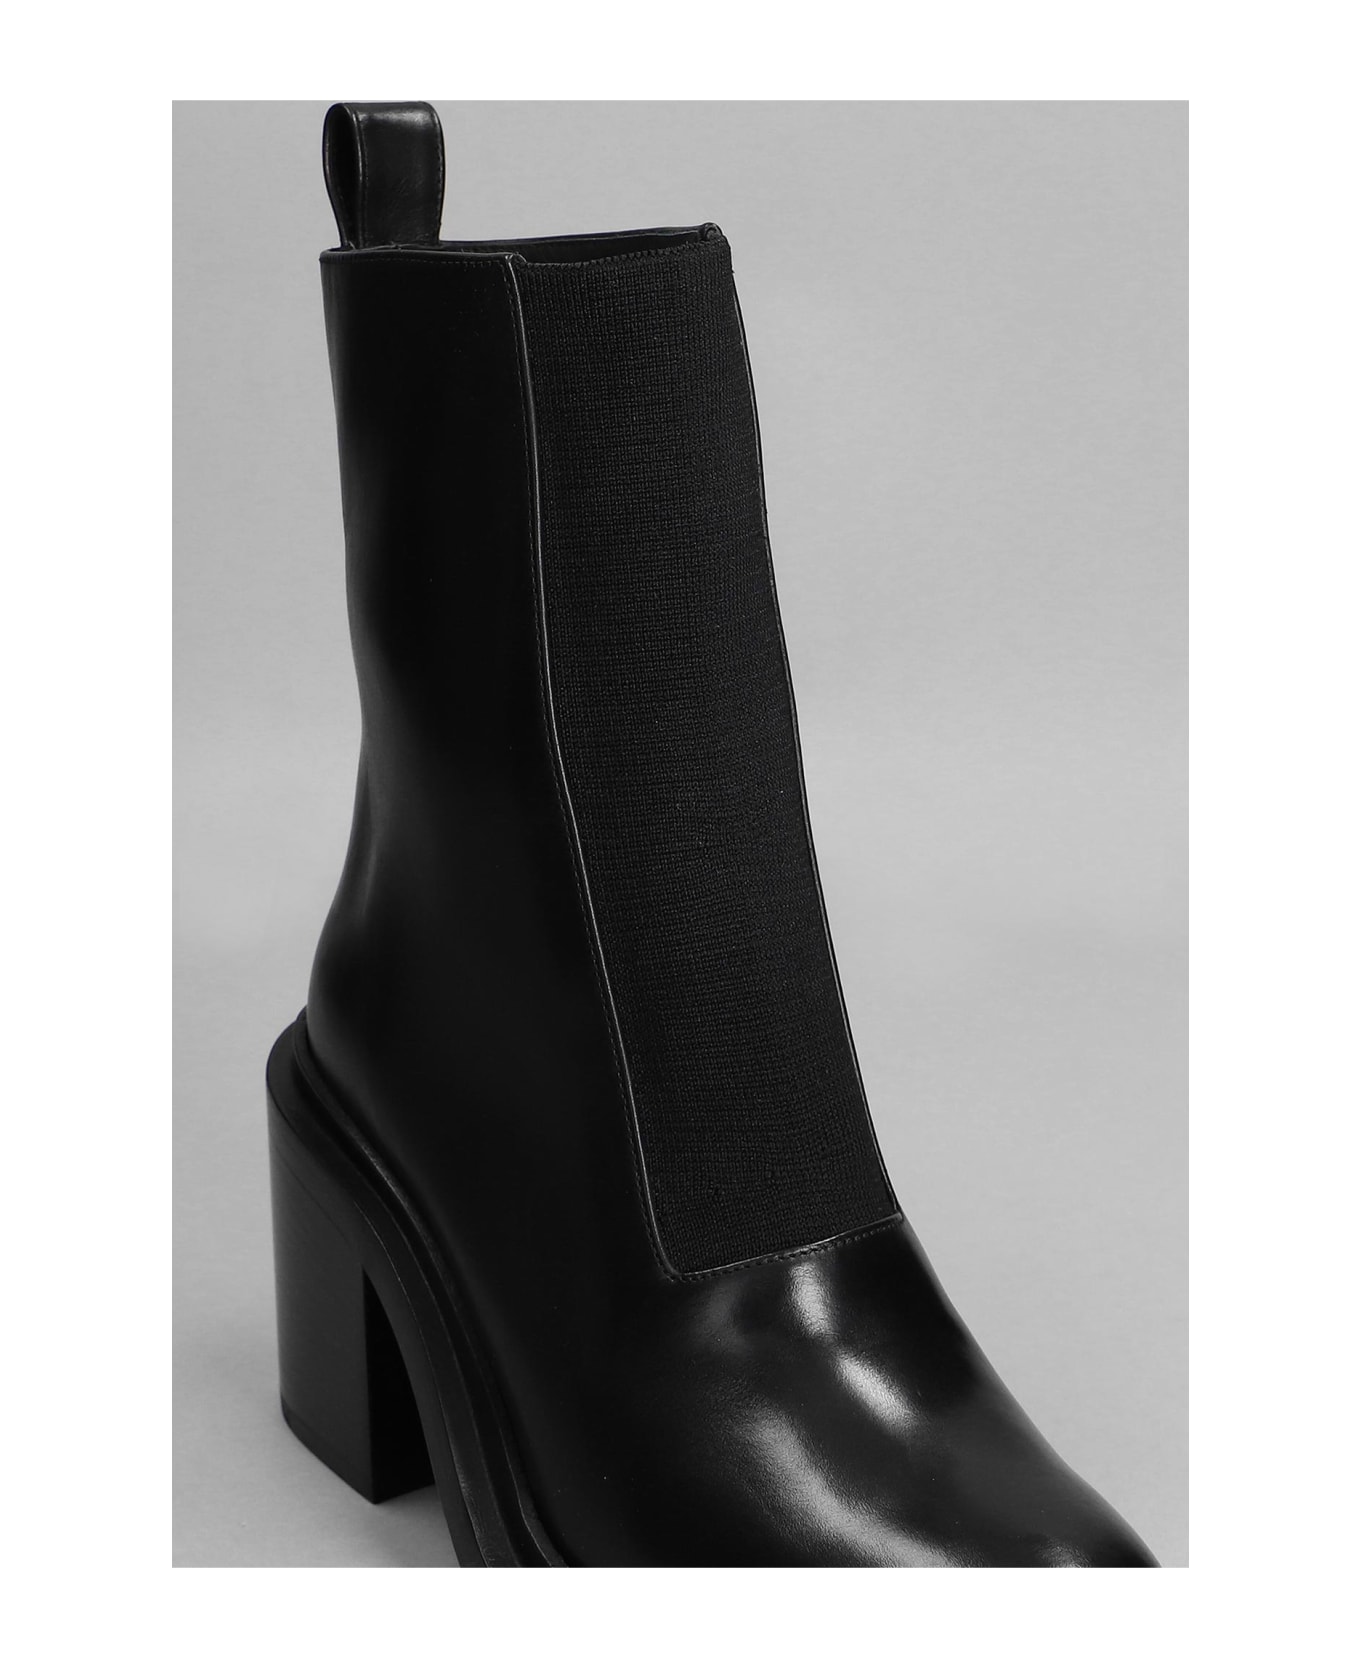 Jil Sander High Heels Ankle Boots In Black Leather - black